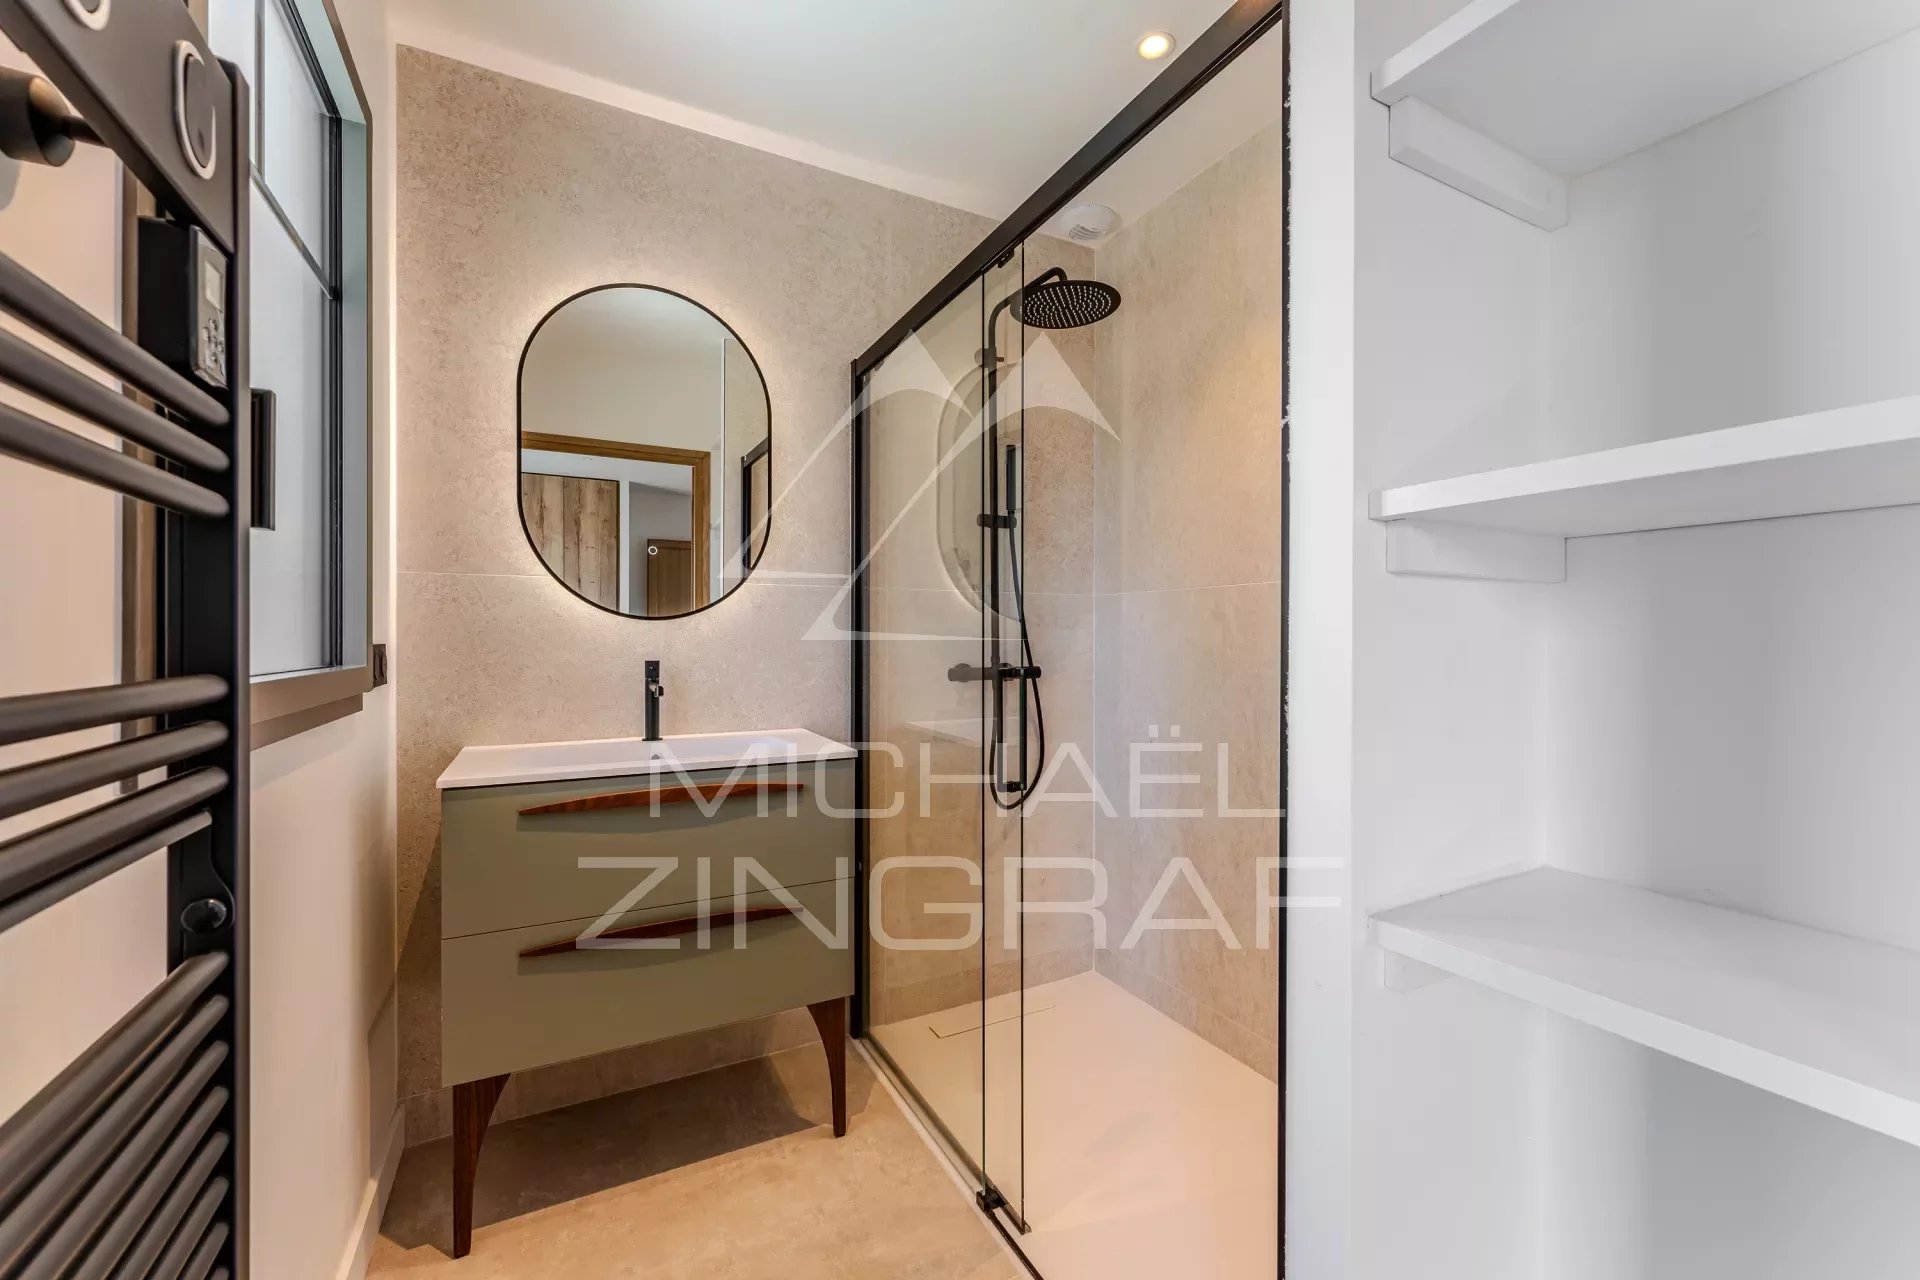 Abatilles - Villa 6 bedrooms - Luxurious amenities